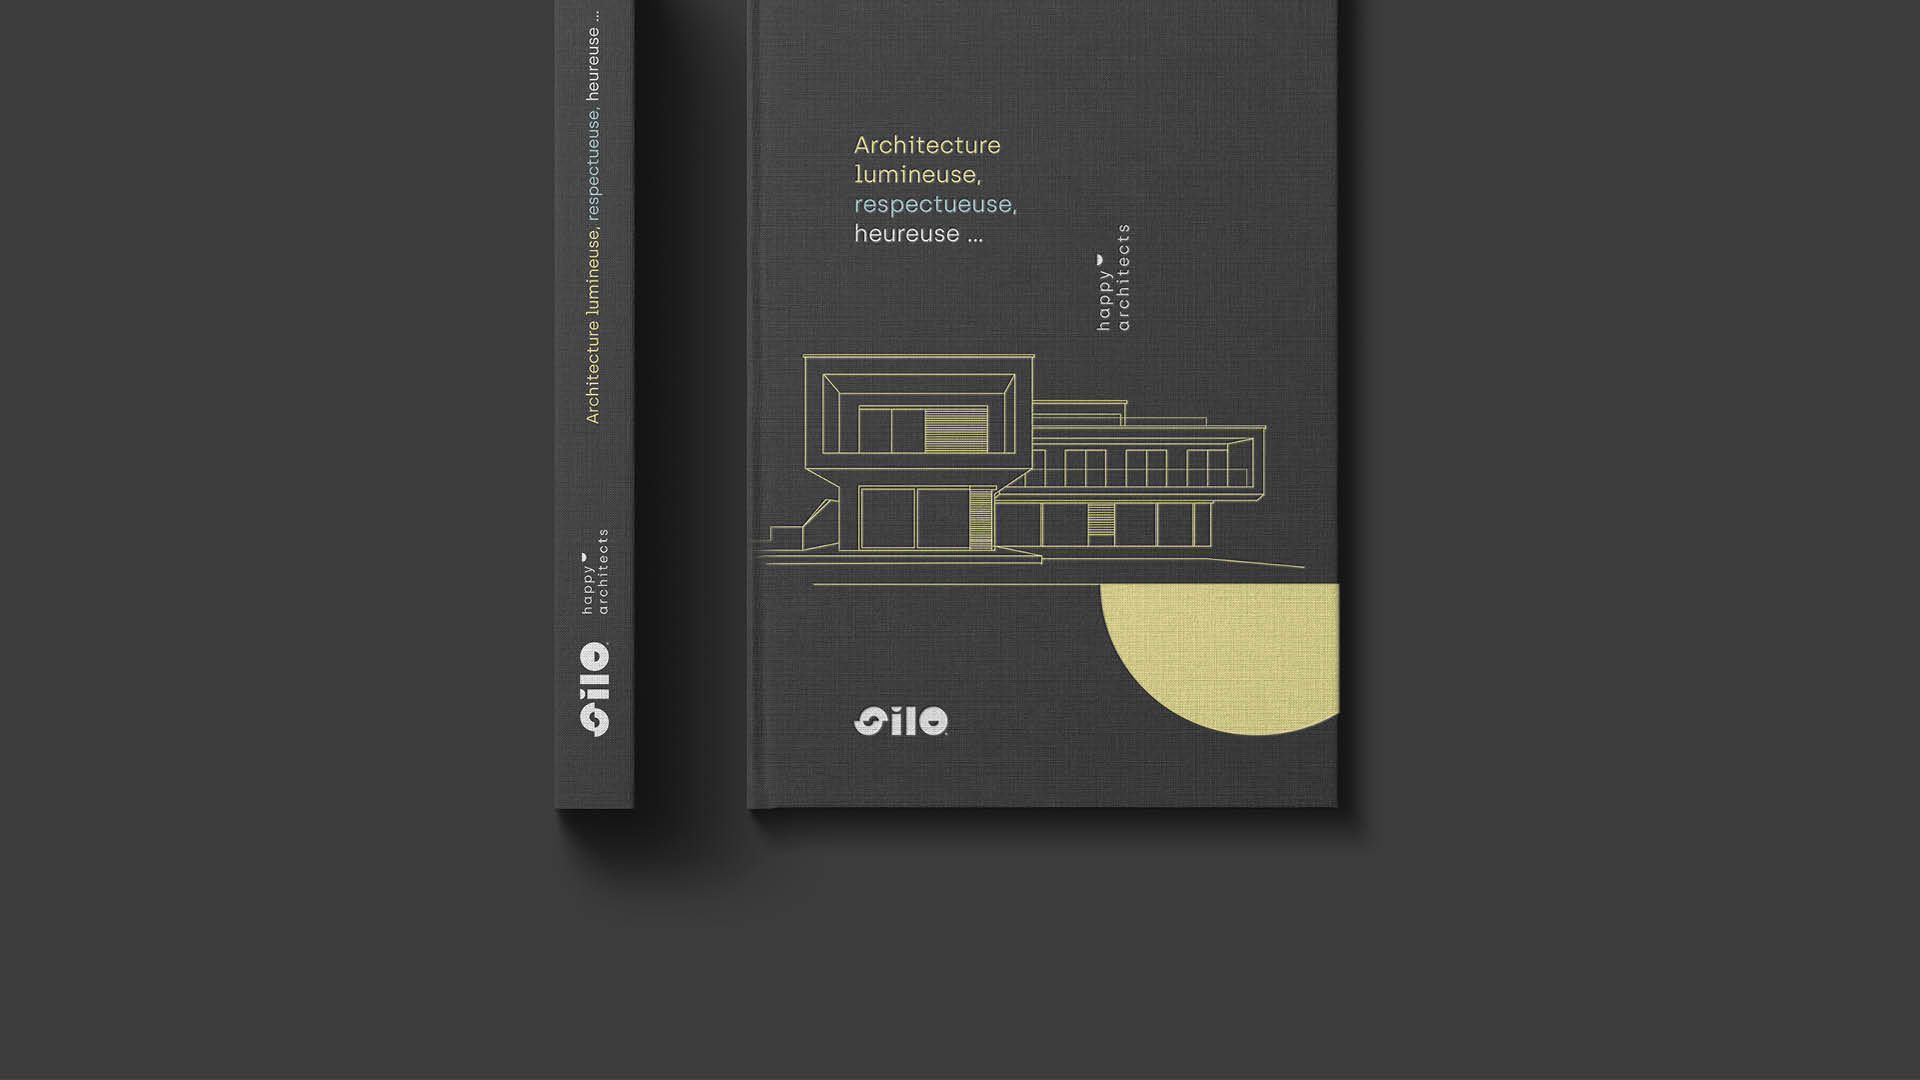 Couverture du livre "Architecture lumineuse, respectueuse, heureuse" du cabinet d'architecture Silo